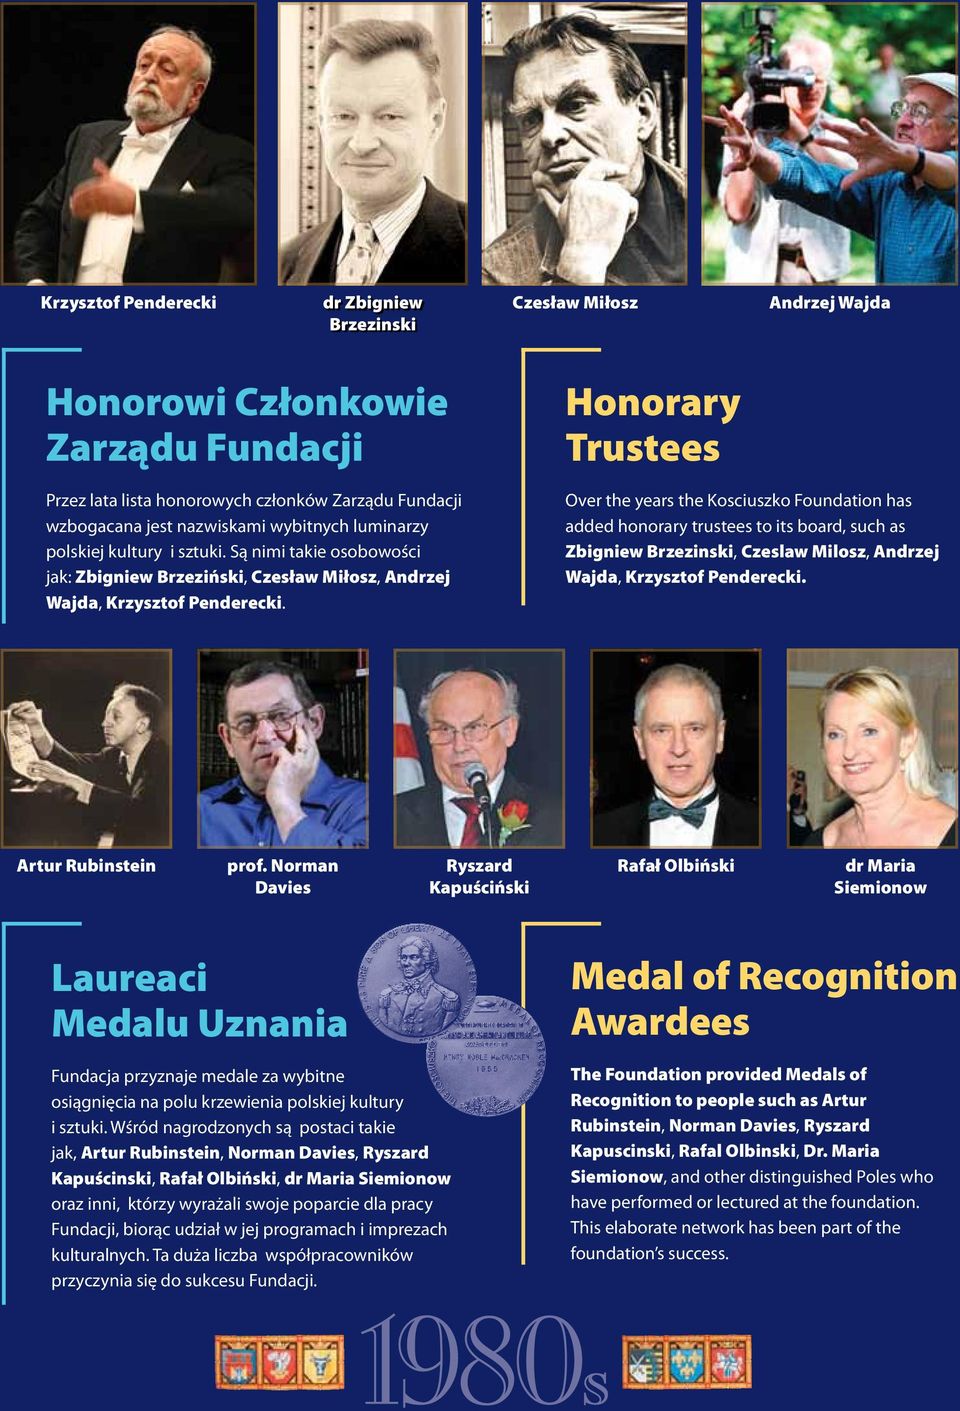 Honorary Trustees Over the years the Kosciuszko Foundation has added honorary trustees to its board, such as Zbigniew Brzezinski, Czeslaw Milosz, Andrzej Wajda, Krzysztof Penderecki.